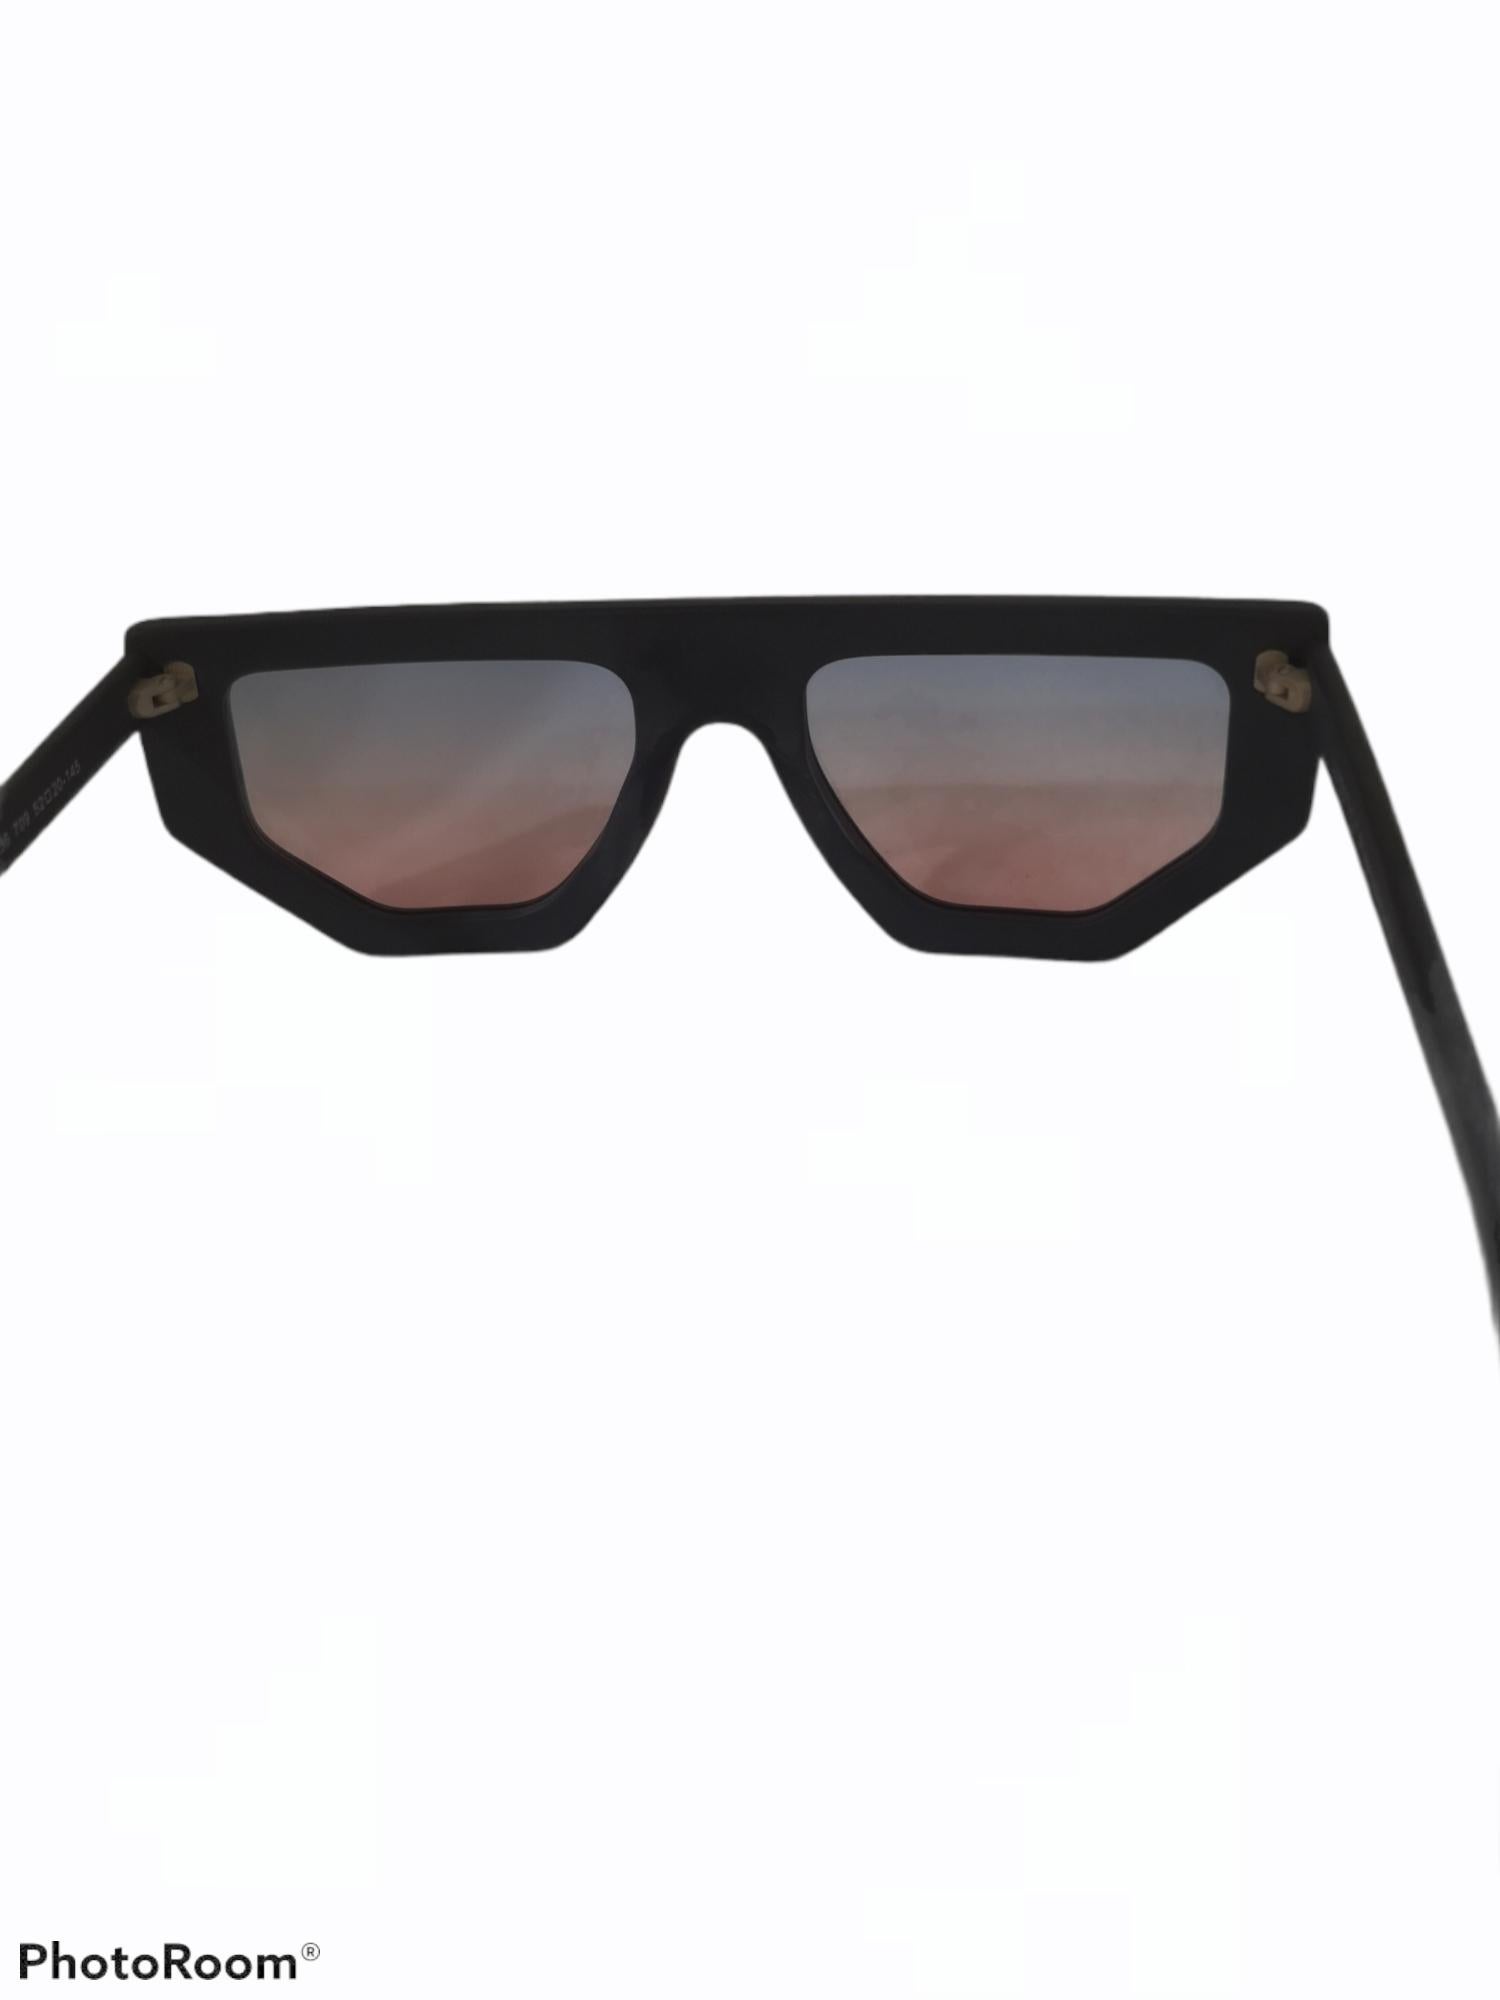 Women's or Men's Black multicoloured glasses sunglasses NWOT